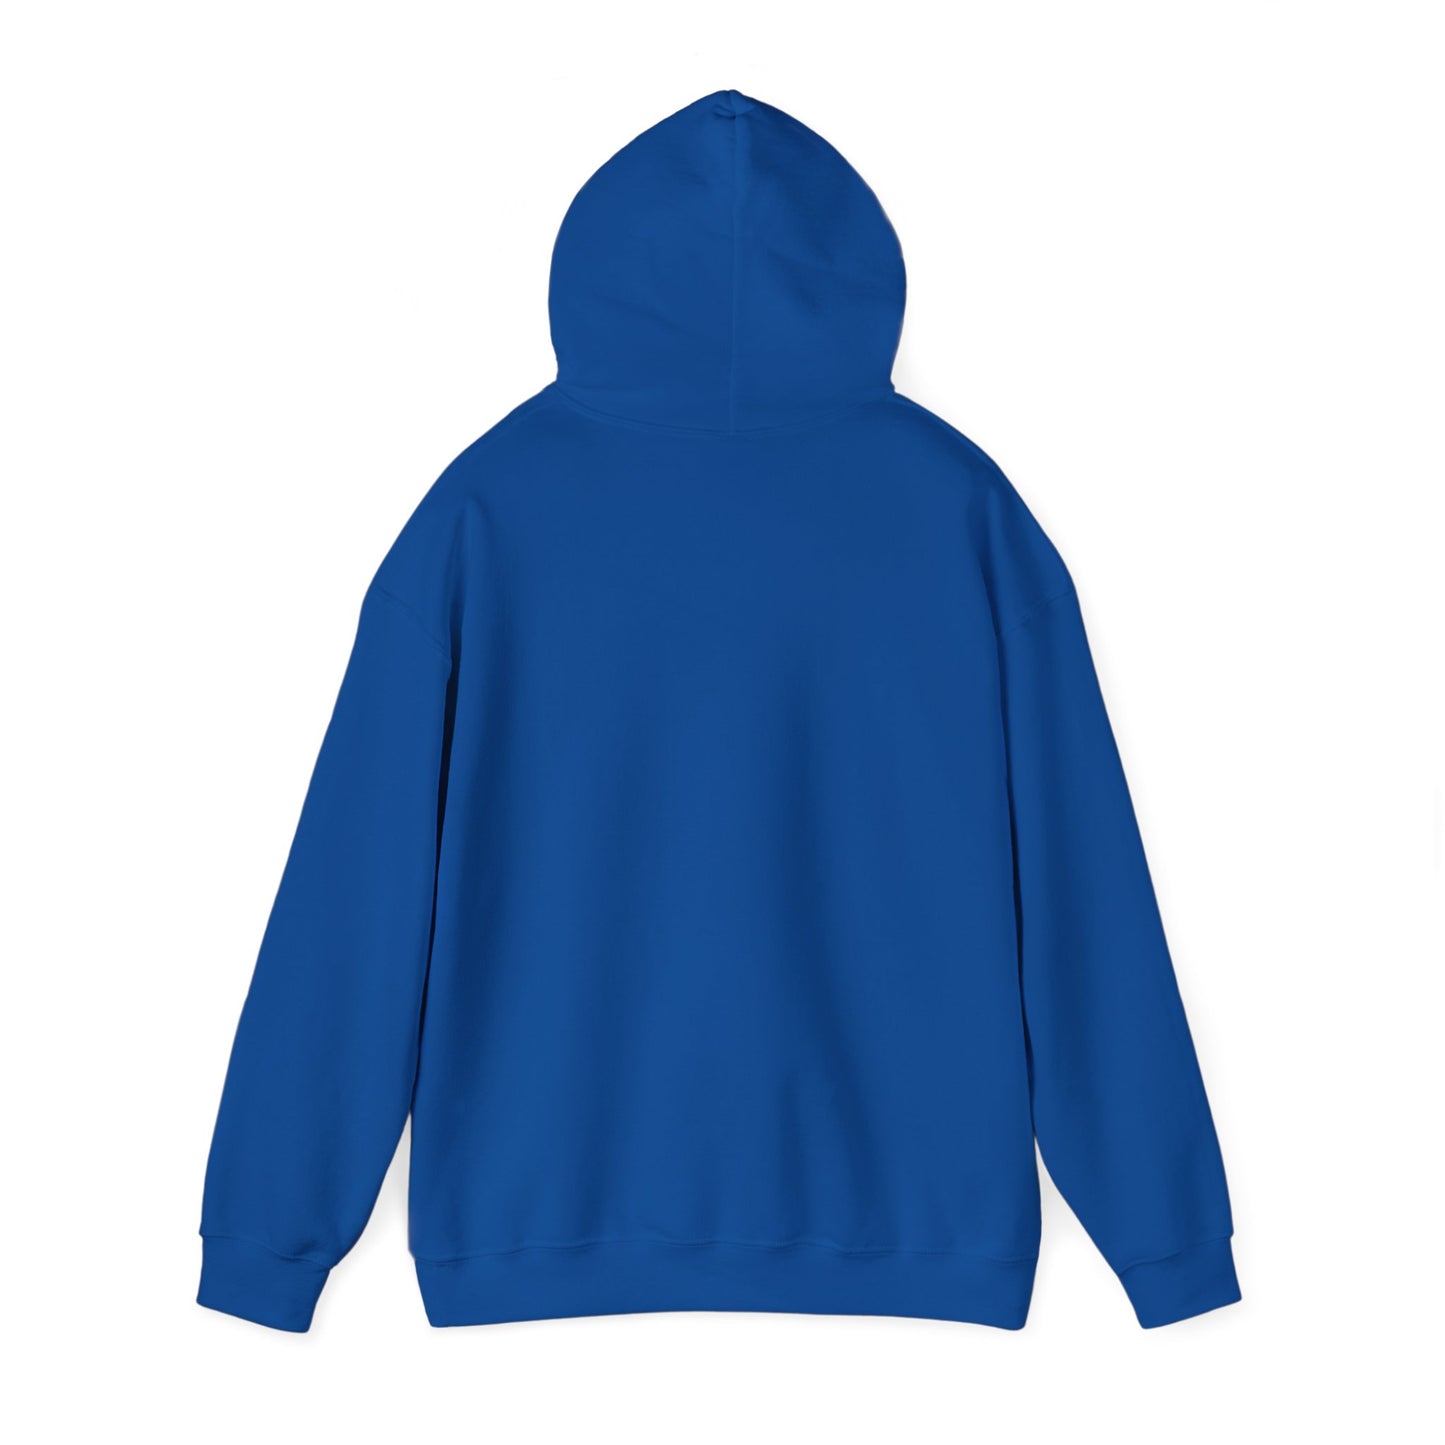 Toss & Fetch - Vancouver, WA Unisex Heavy Blend™ Hooded Sweatshirt